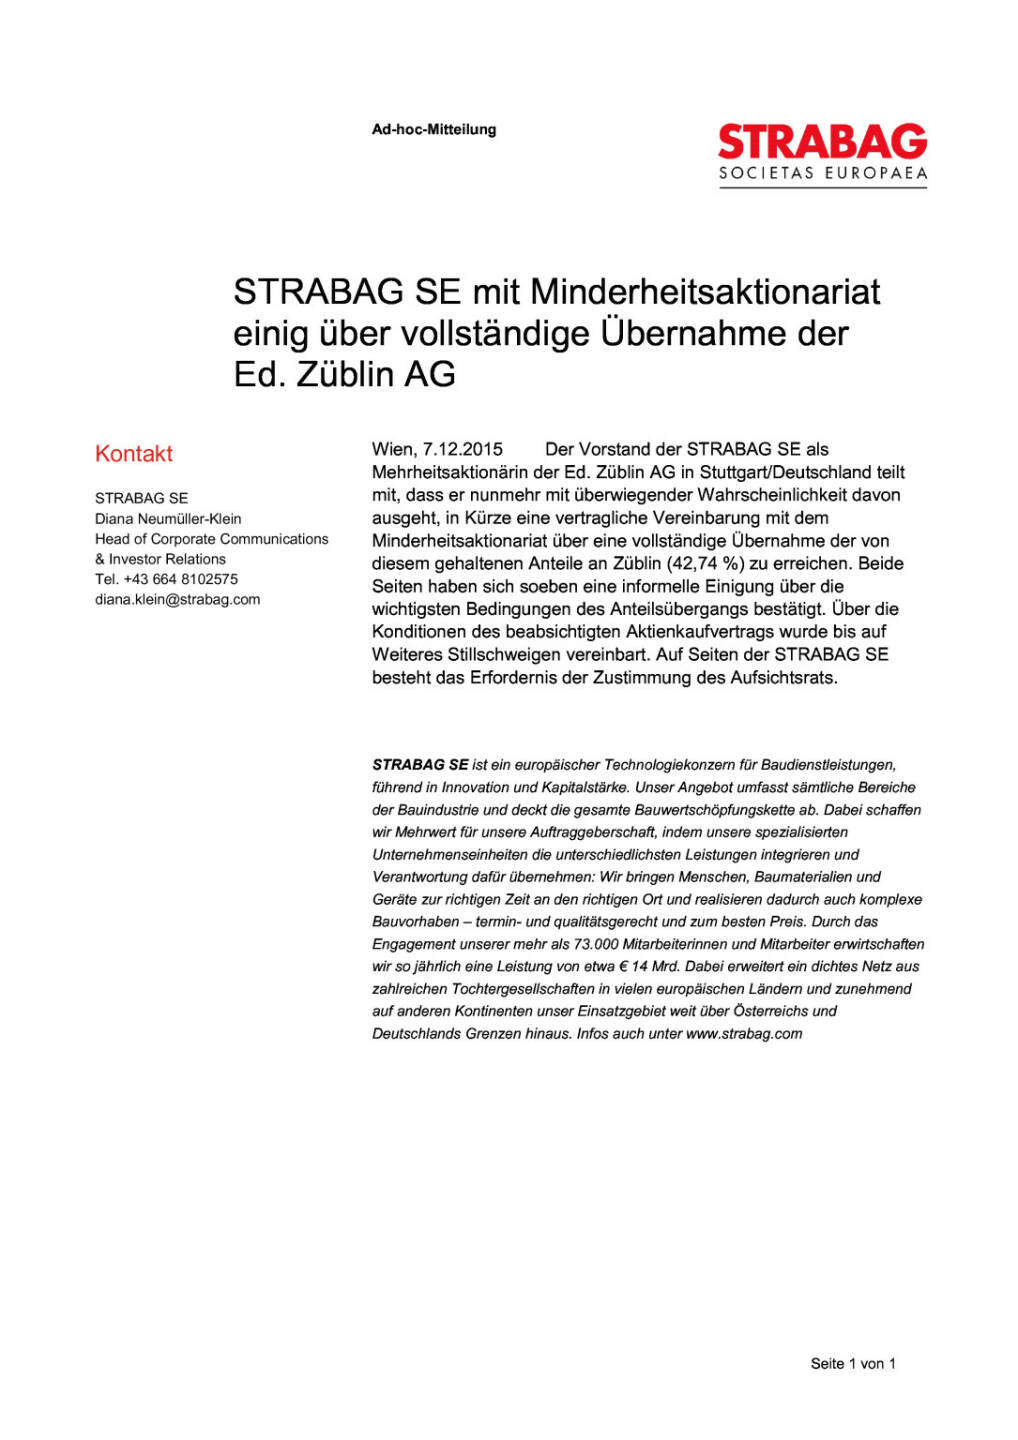 Strabag SE mit Minderheitsaktionariat einig über vollständige Übernahme der Ed. Züblin AG, Seite 1/1, komplettes Dokument unter http://boerse-social.com/static/uploads/file_510_strabag_se_mit_minderheitsaktionariat_einig_uber_vollstandige_ubernahme_der_ed_zublin_ag.pdf